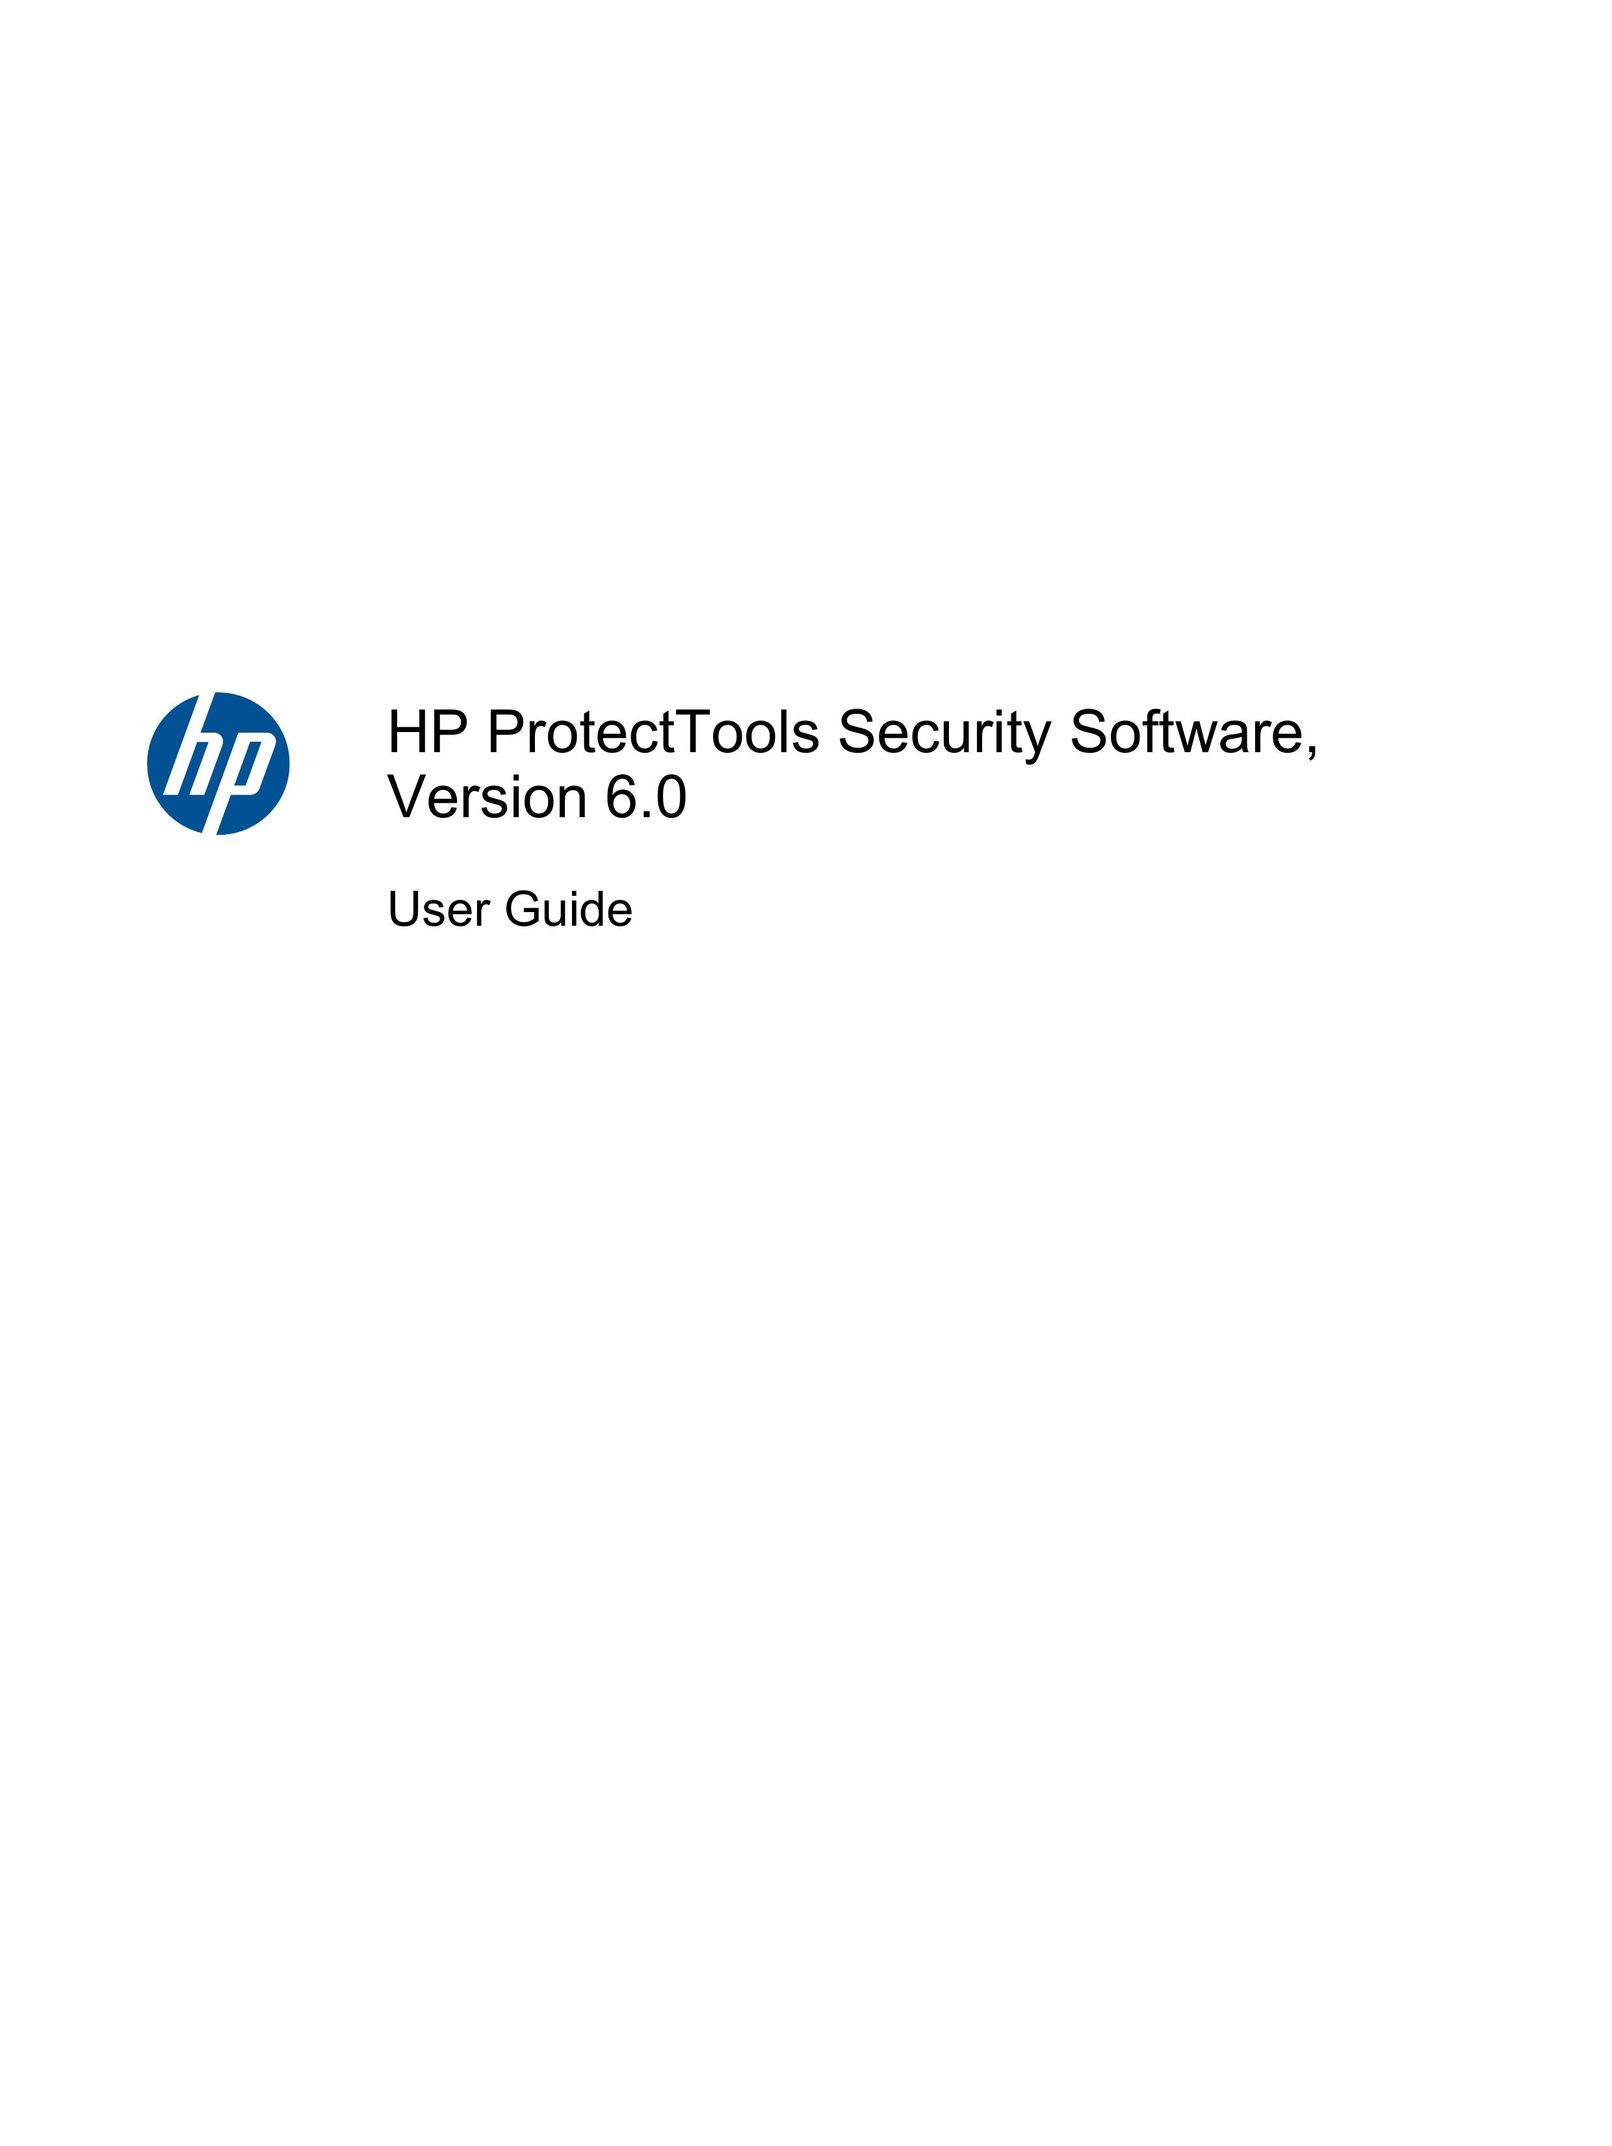 HP (Hewlett-Packard) 3130 Personal Computer User Manual